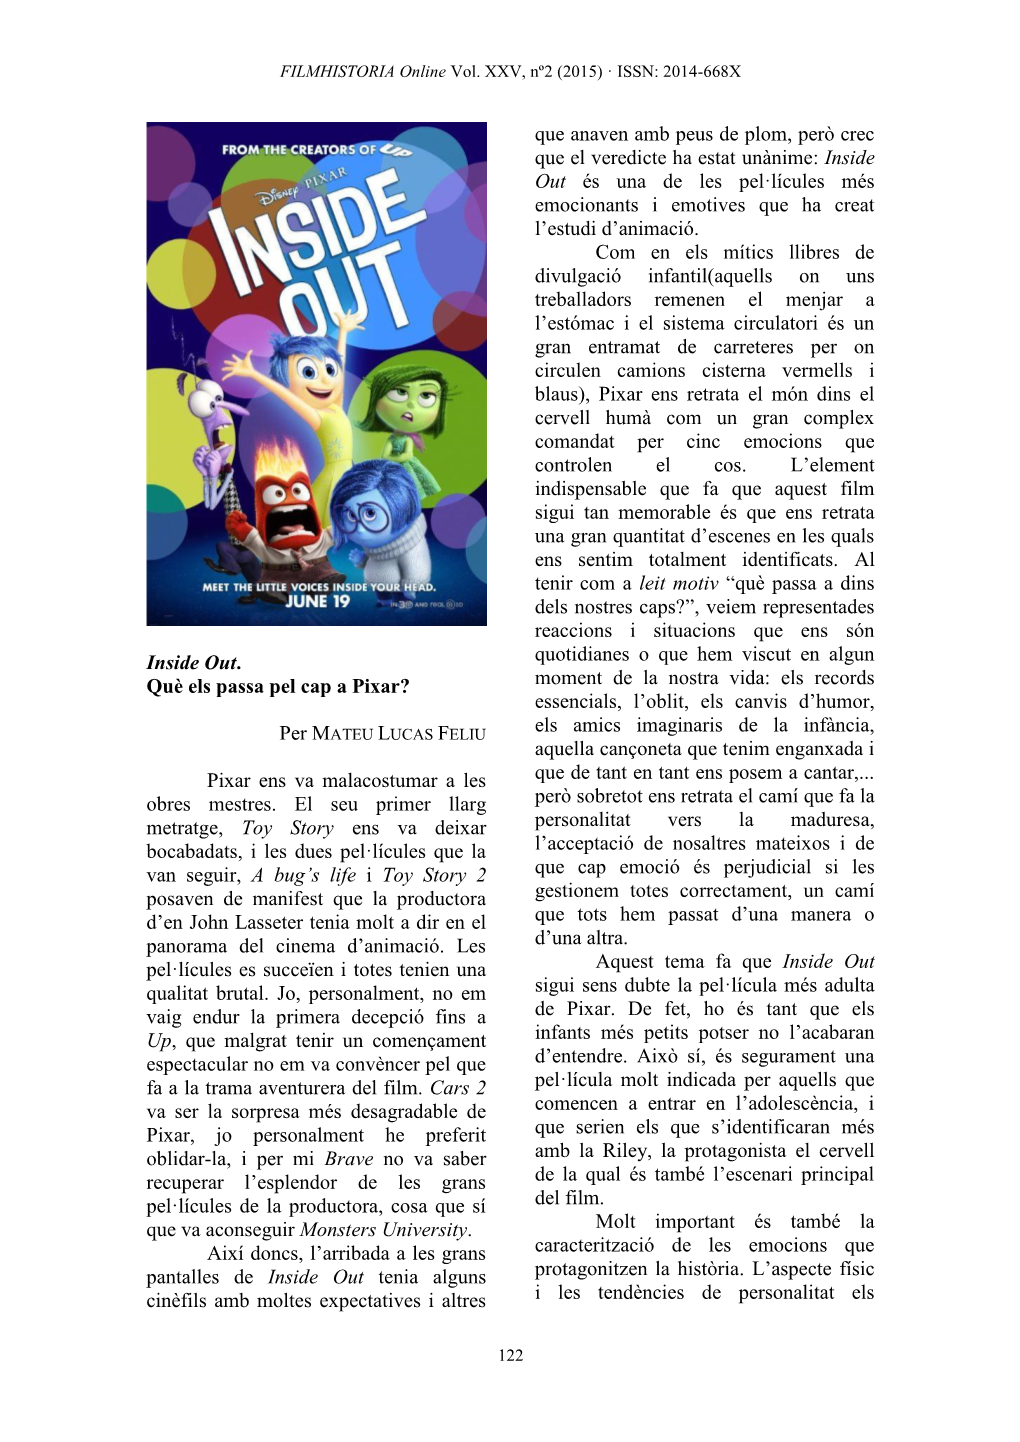 Inside Out. Què Els Passa Pel Cap a Pixar? Per MATEU LUCAS FELIU